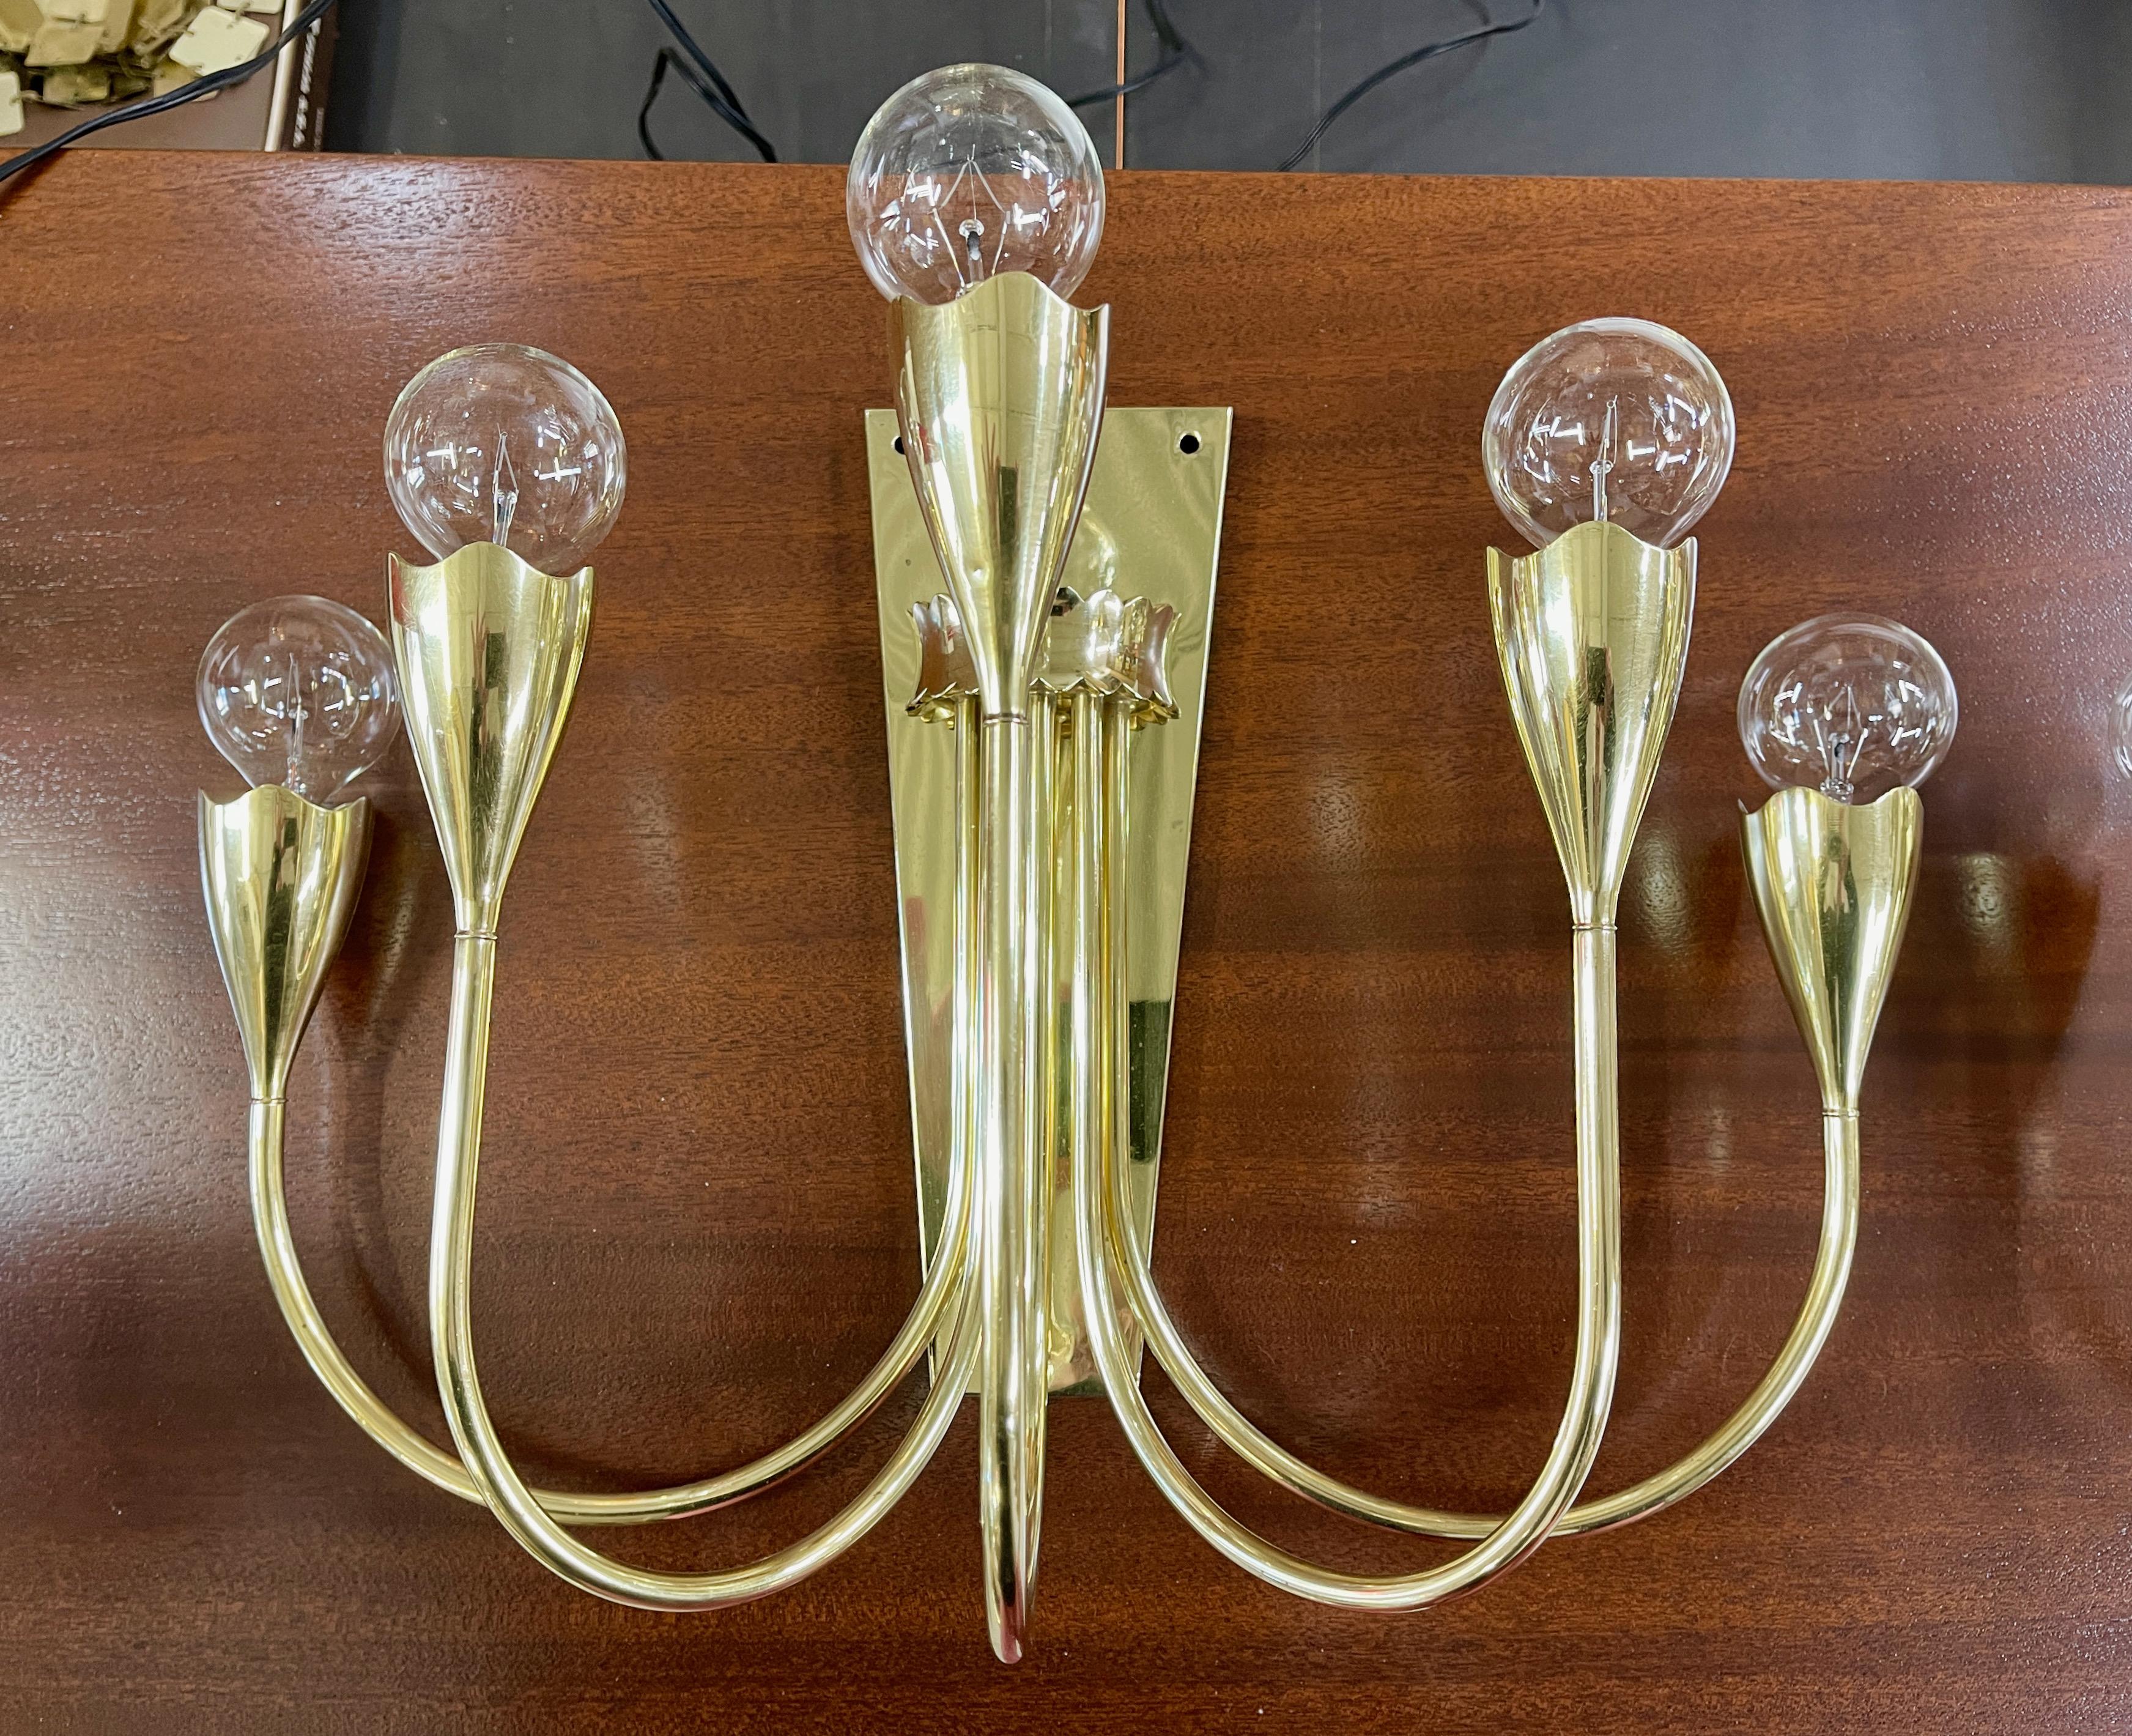 Beeindruckendes Paar handwerklich hergestellter italienischer 5-armiger Kandelaber aus massivem Messing aus den 1950er Jahren mit hübschen organischen, geschwungenen Bechern, die an die Glühbirnenköpfe einer Tulpe erinnern, ähnlich wie die Stehlampe